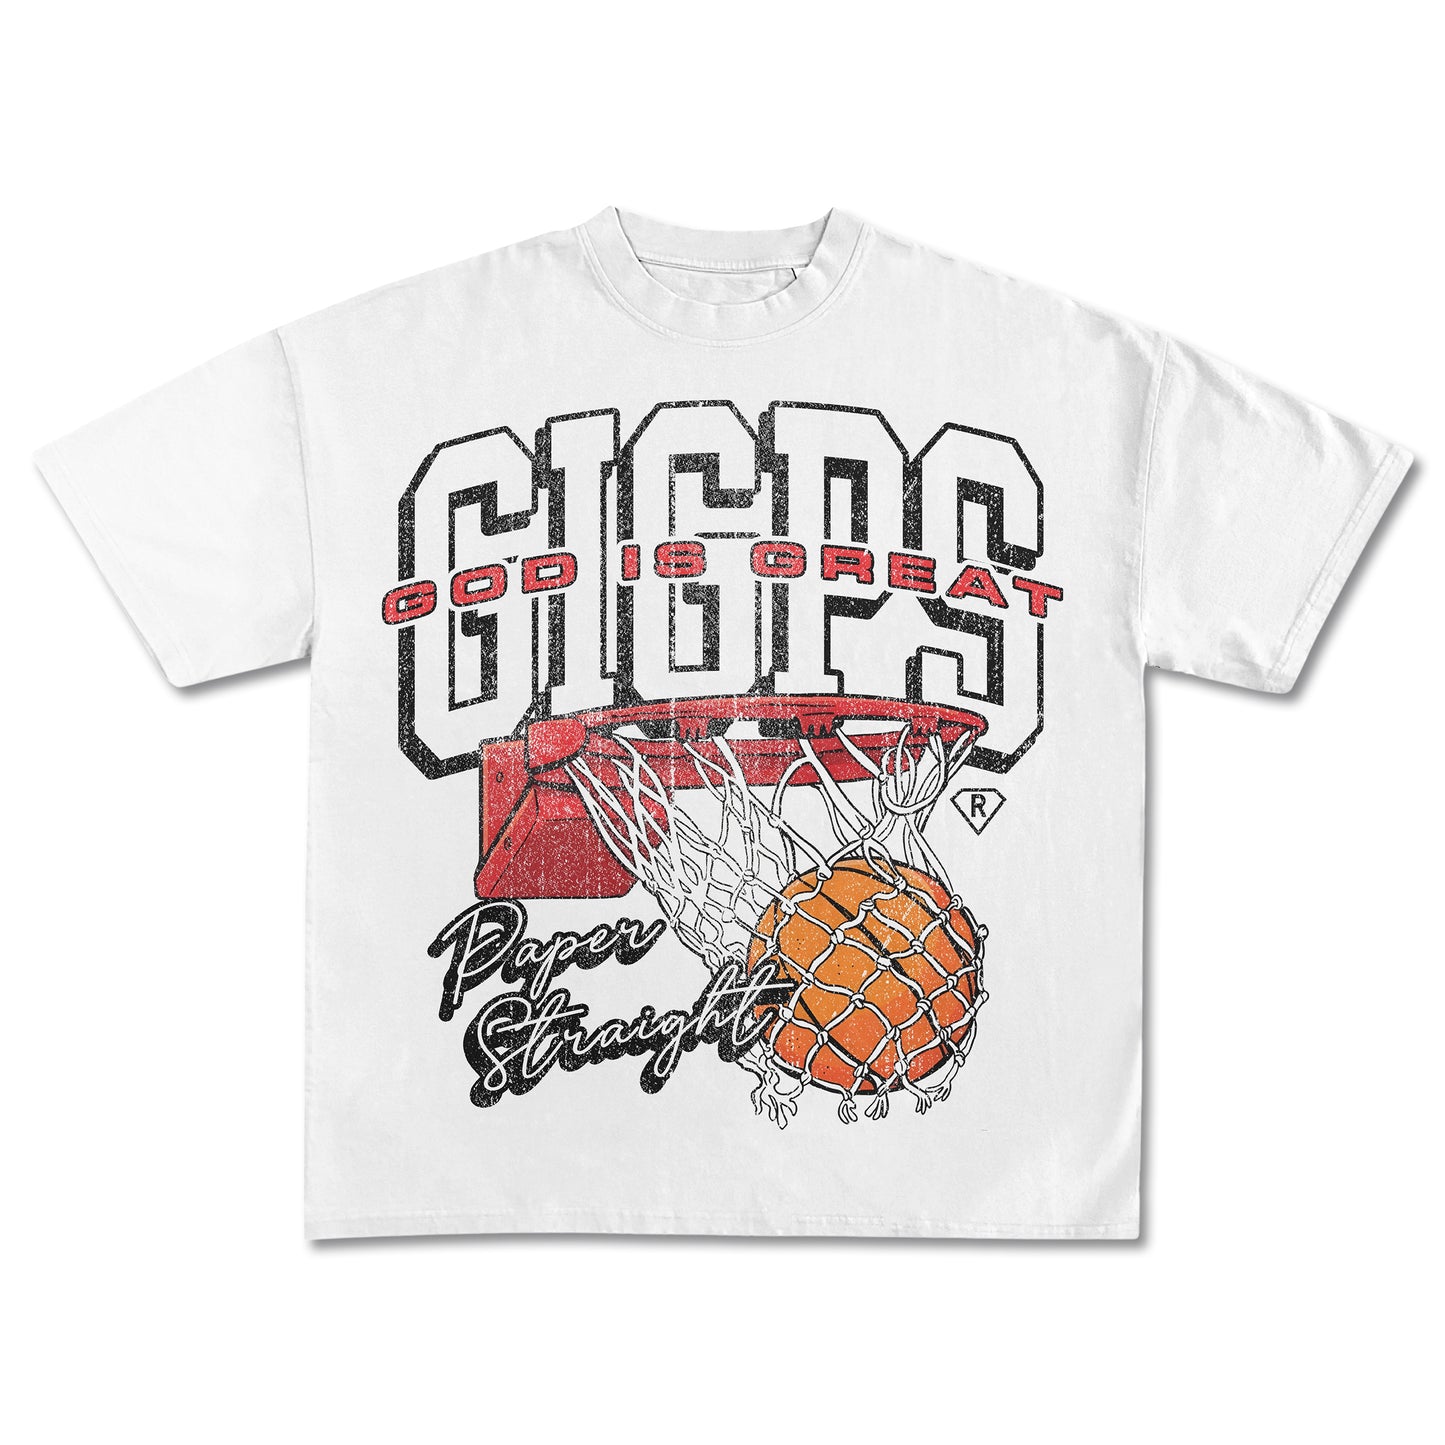 GIGPS Basketball T-Shirt (PREORDER)